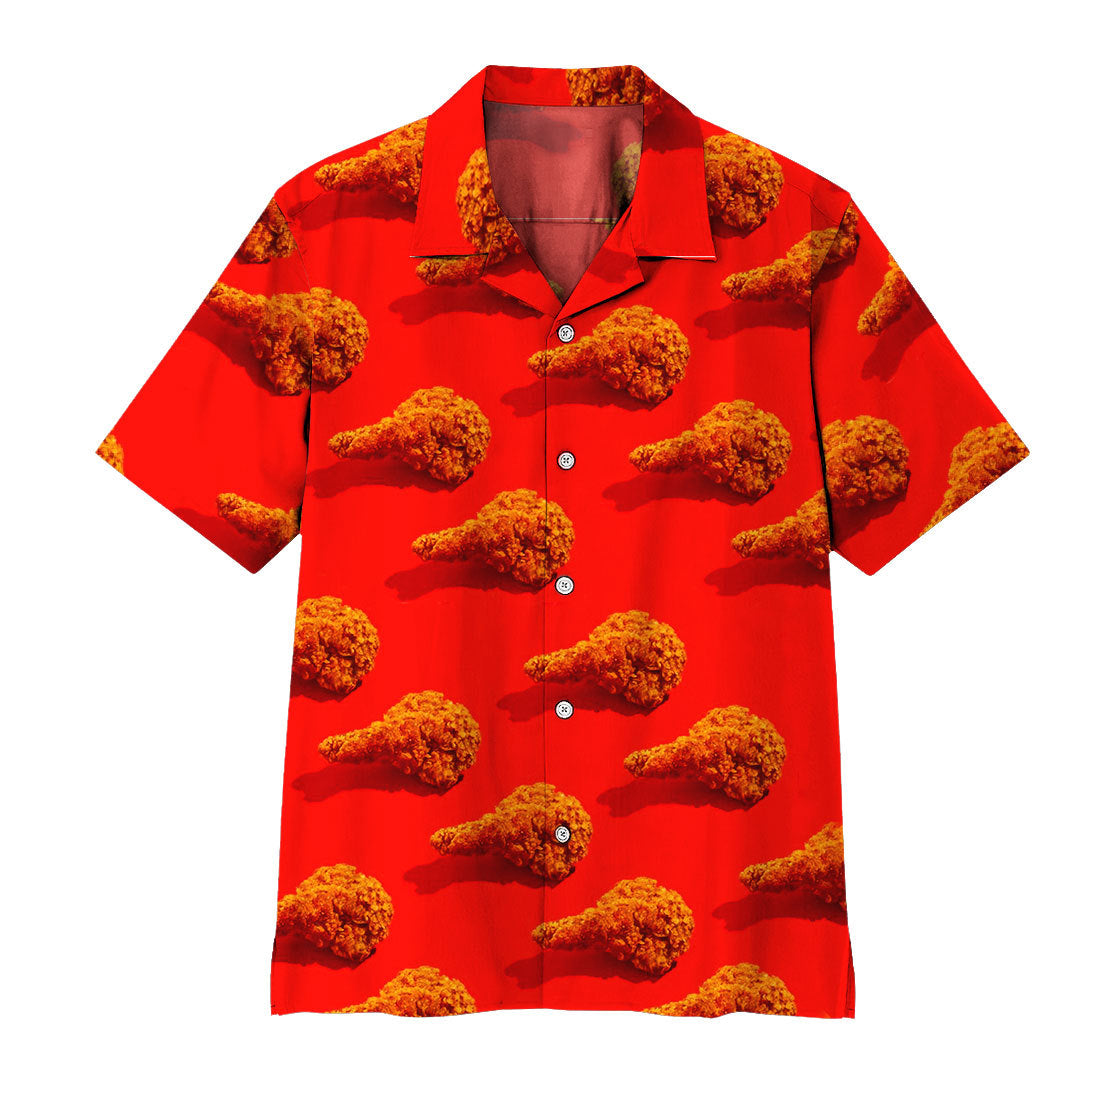 Fried Chicken Hawaii Shirt